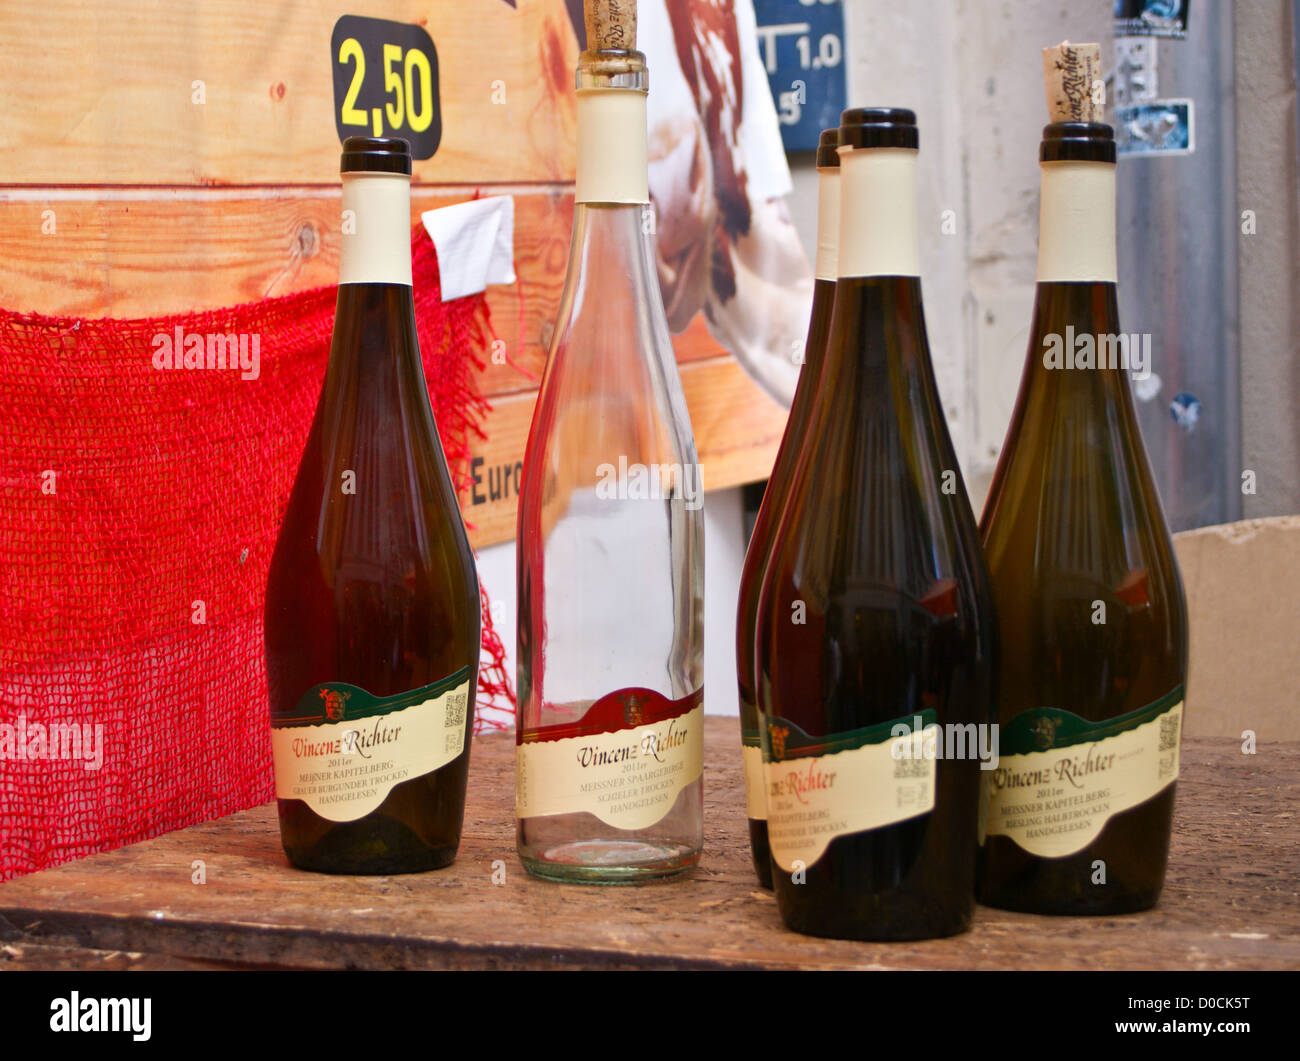 Leere Flaschen auf Meissner Weinfest, Wein Festival, Meißen, Sachsen,  Sachsen, Deutschland Stockfotografie - Alamy